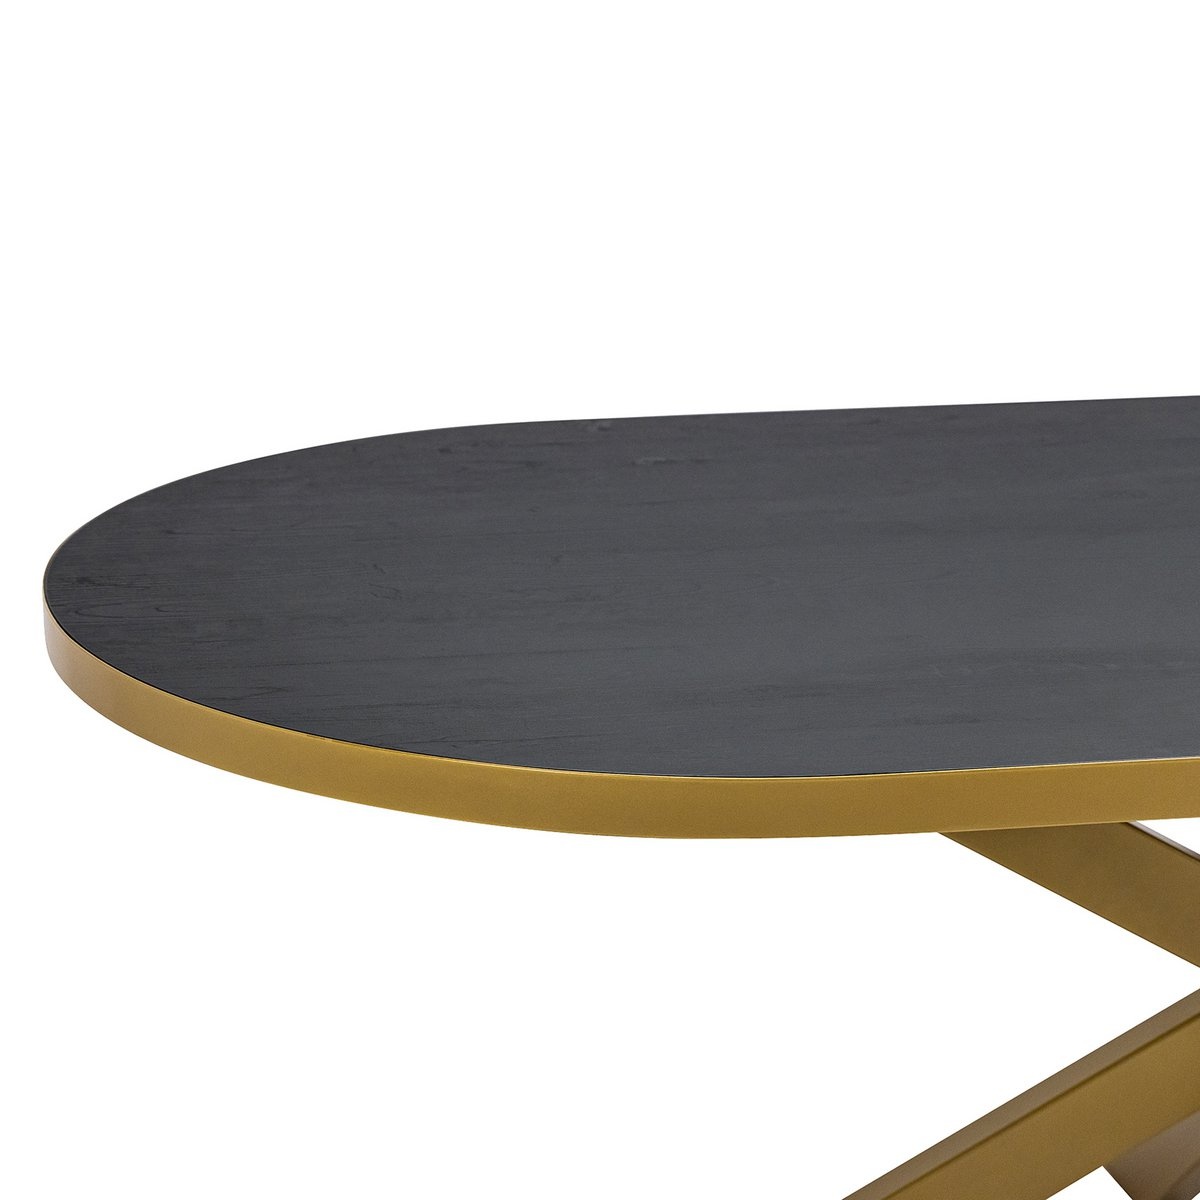 KantoormeubelenPlus Stalux Plat ovale eettafel 'Noud' 210 x 100, kleur goud / zwart eiken